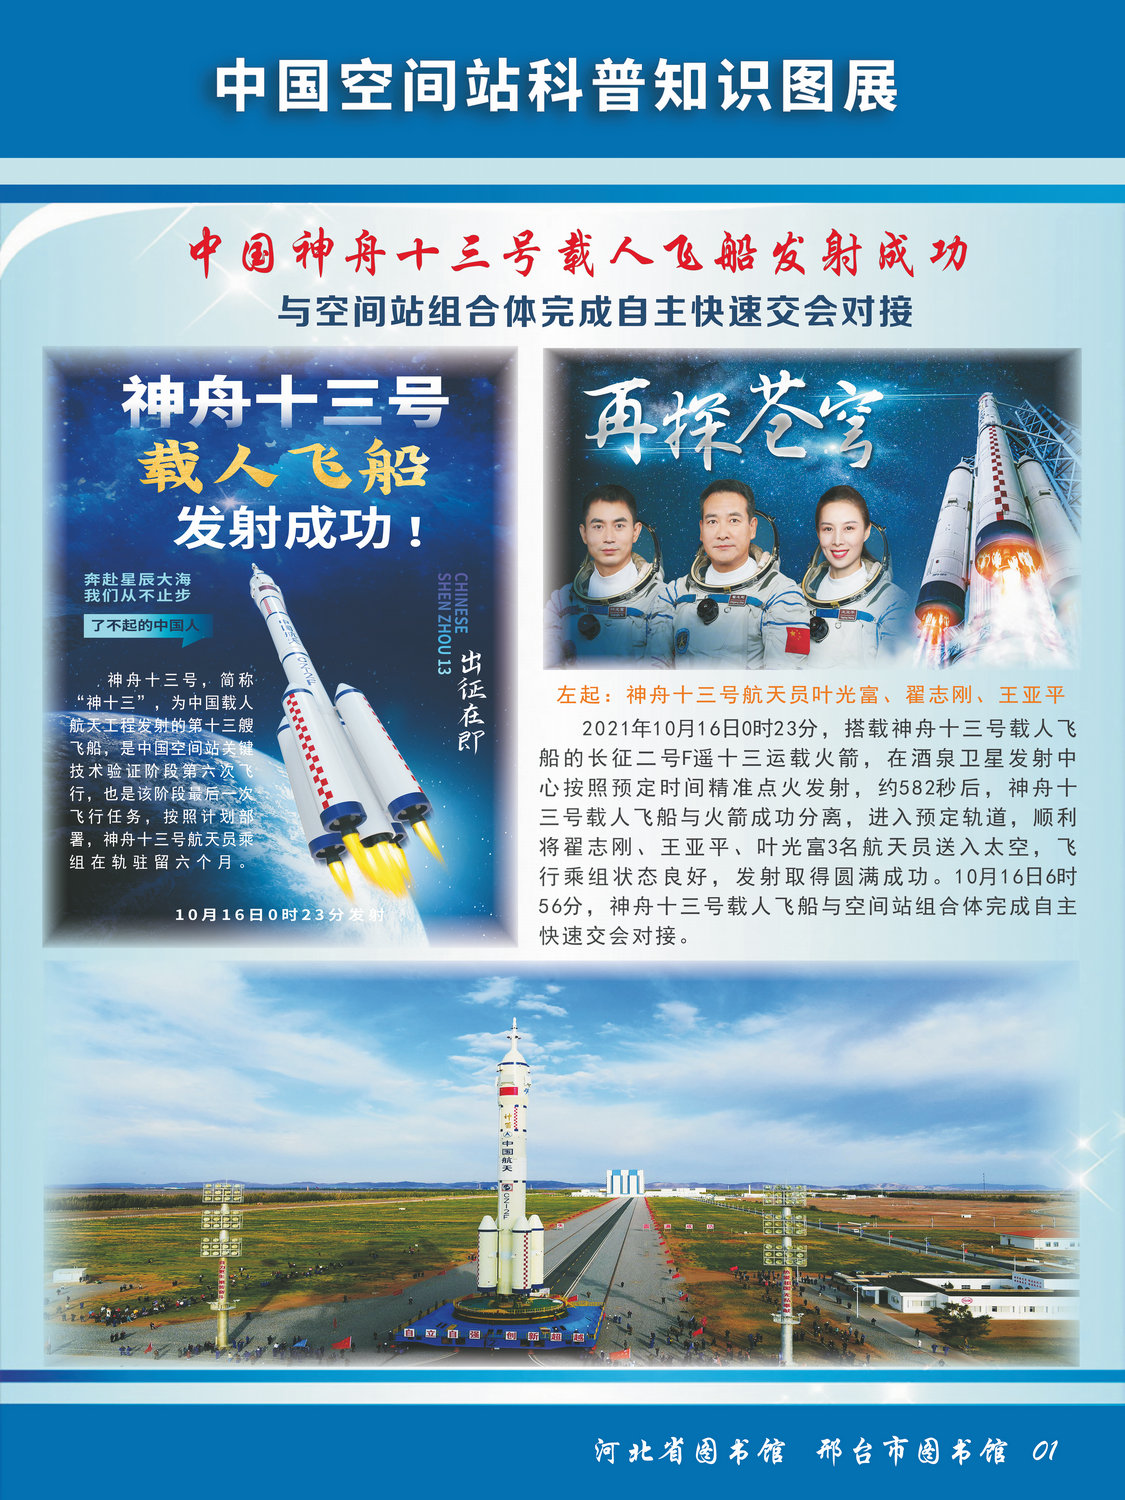 中国空间站科普知识图文展_图1